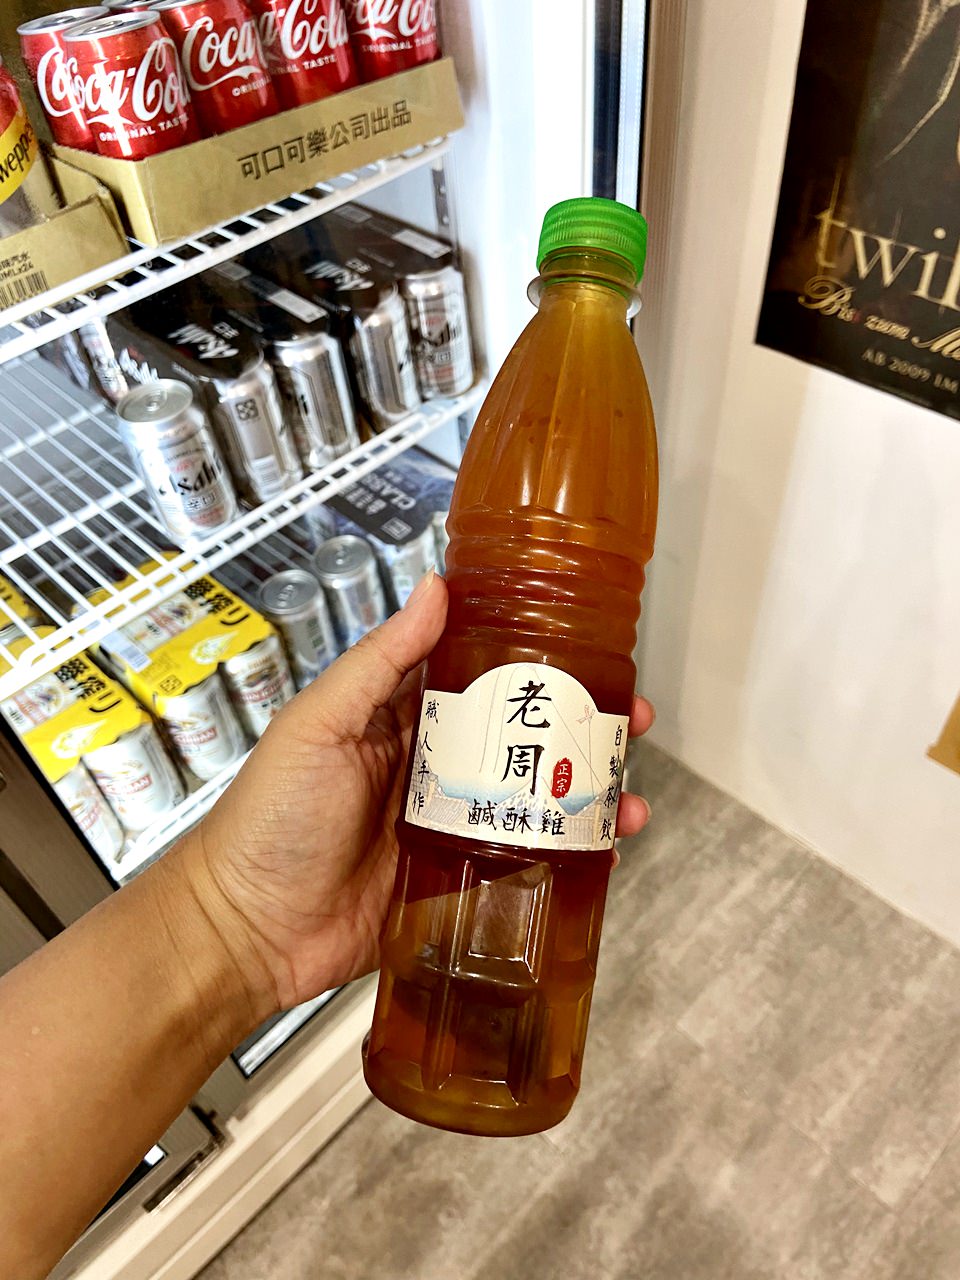 老周冷泡茶(無糖) 35元▼ 